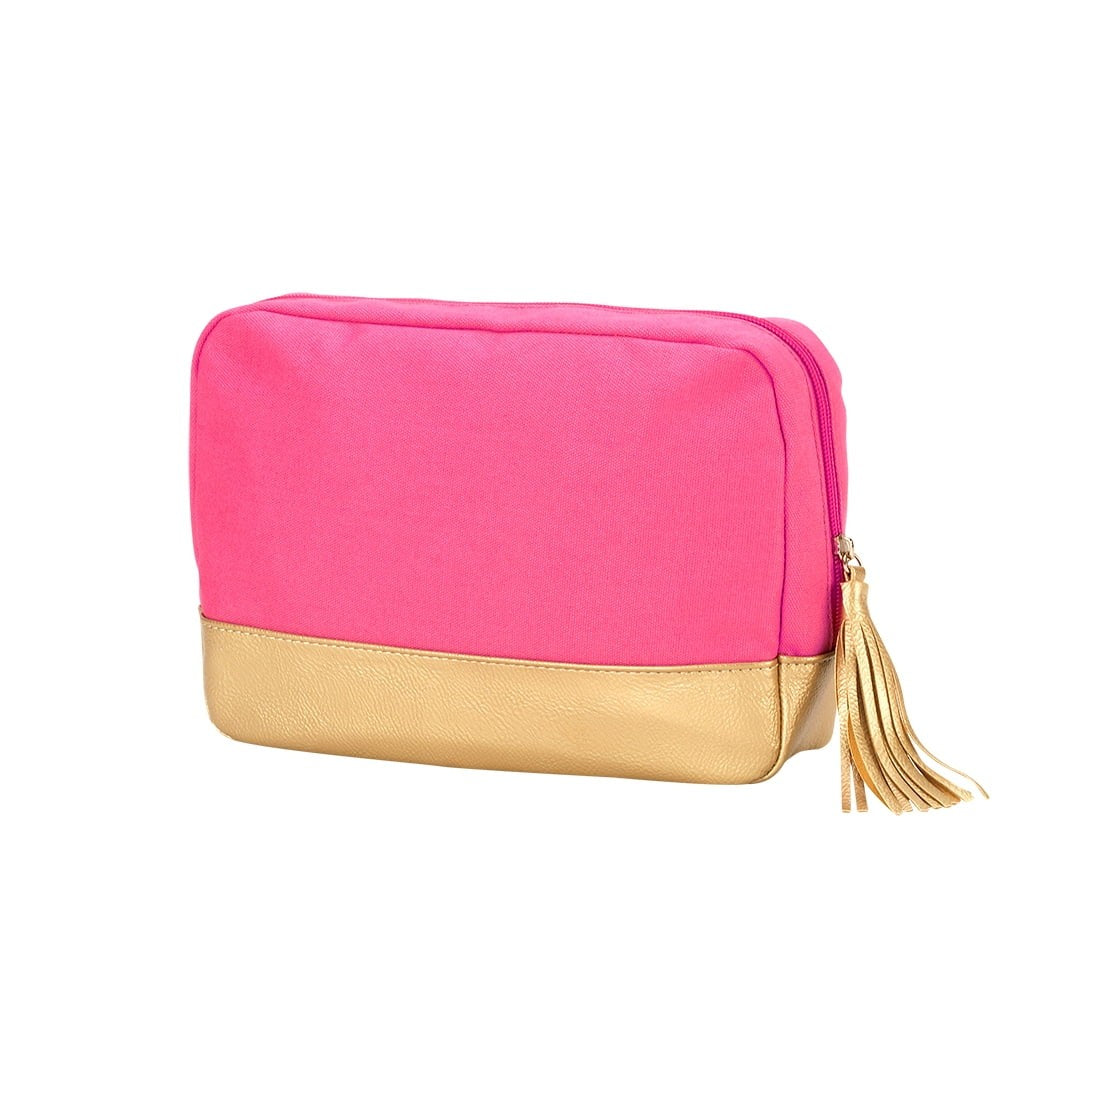 Cabana Cosmetic Bag - Hot Pink